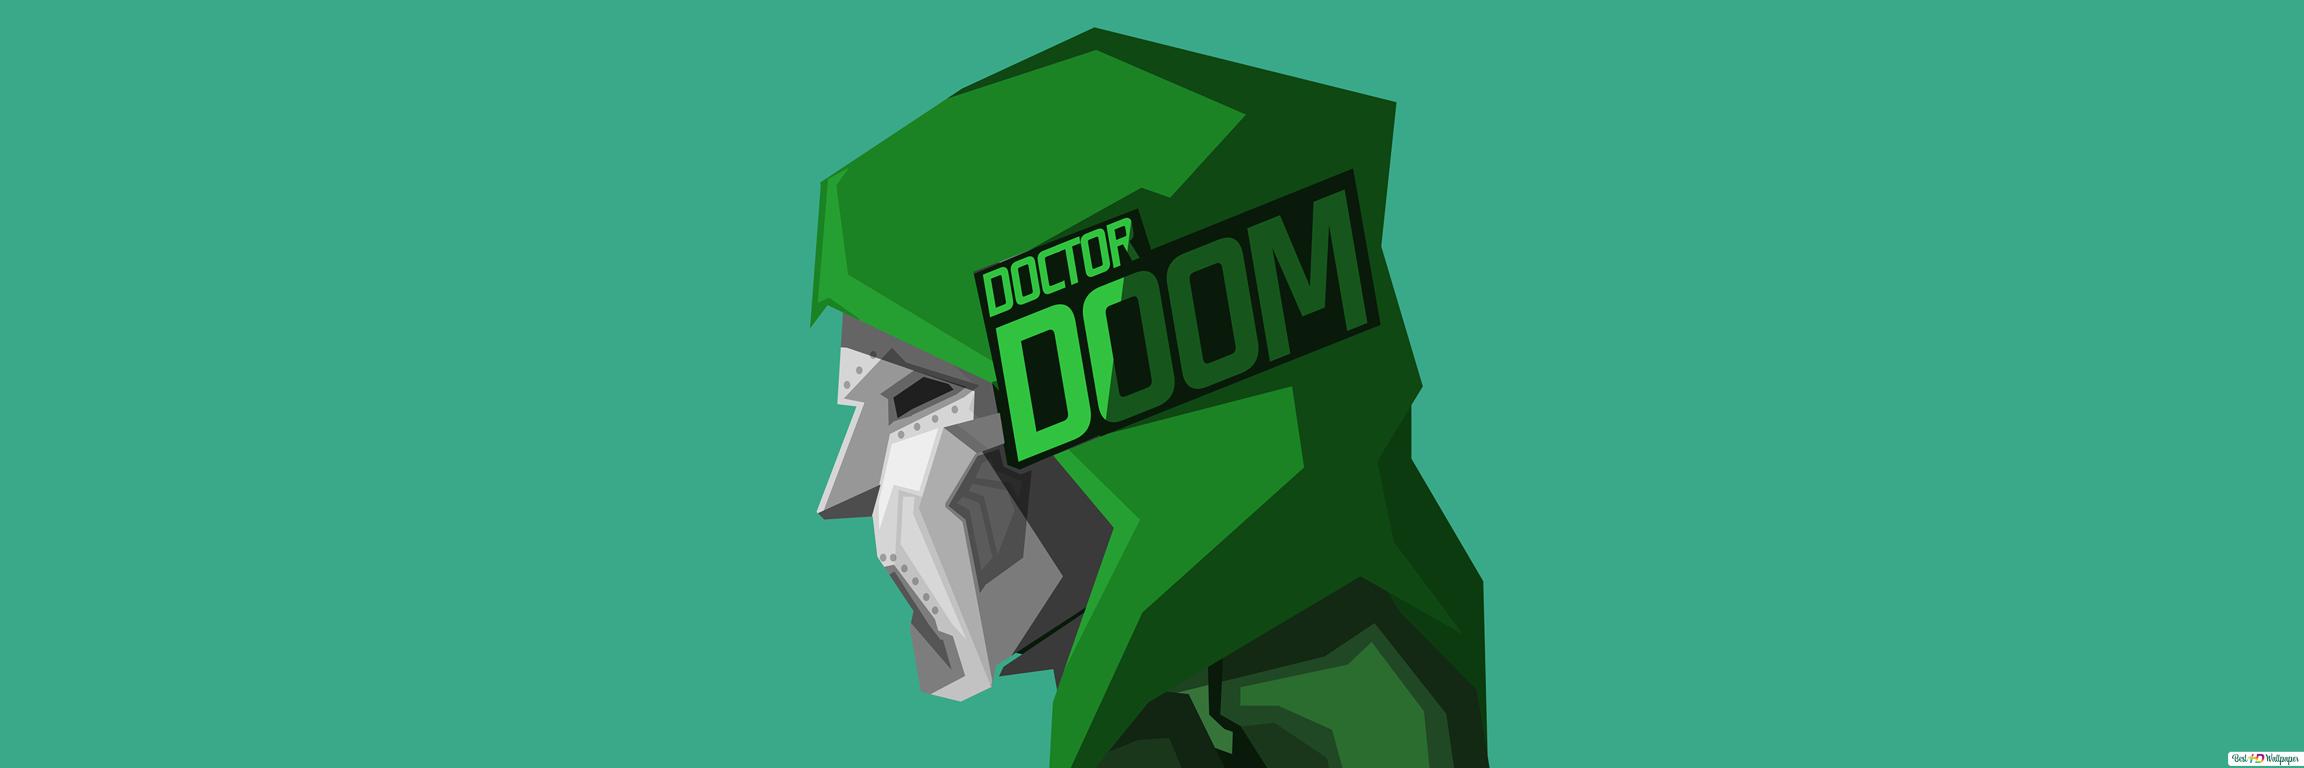 Doctor Doom Minimalism Wallpapers